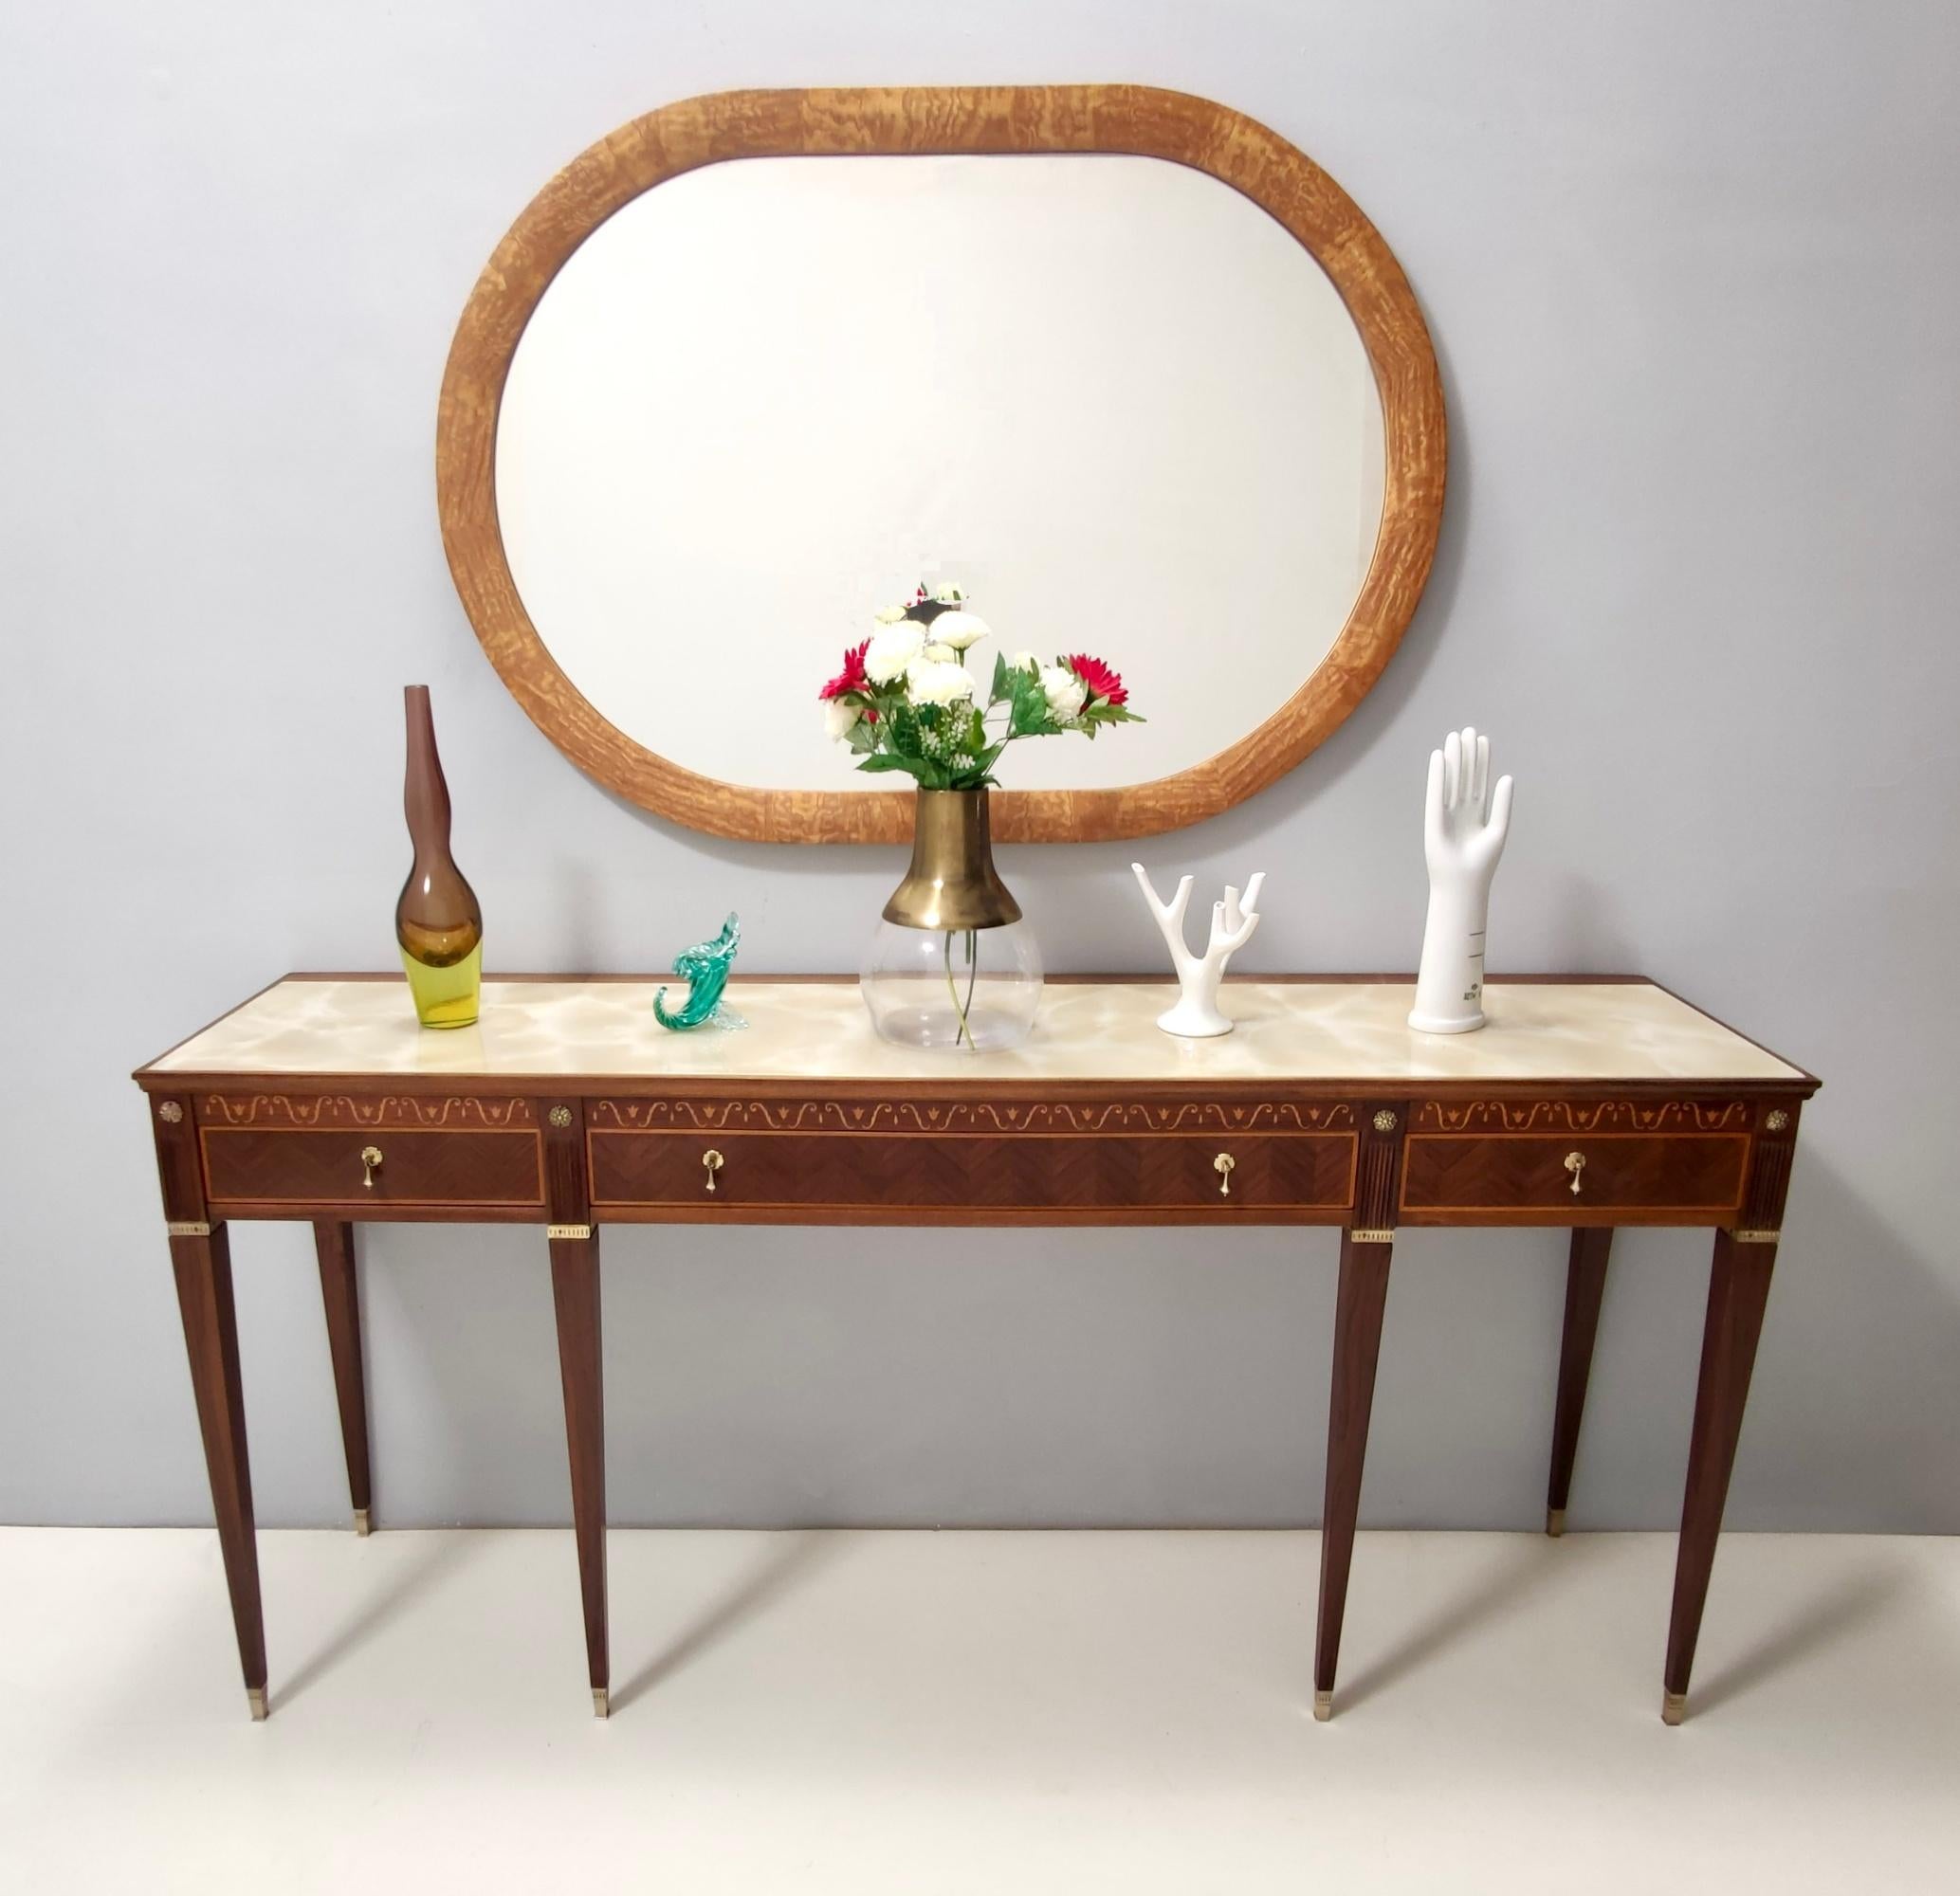 Hergestellt in Italien, 1950er Jahre.
Dieser Spiegel hat einen ovalen Rahmen aus Eschenholz.
Es könnte leichte Gebrauchsspuren aufweisen, da es Vintage ist, aber es kann als in sehr gutem Originalzustand und bereit, ein Stück in einem Haus zu werden